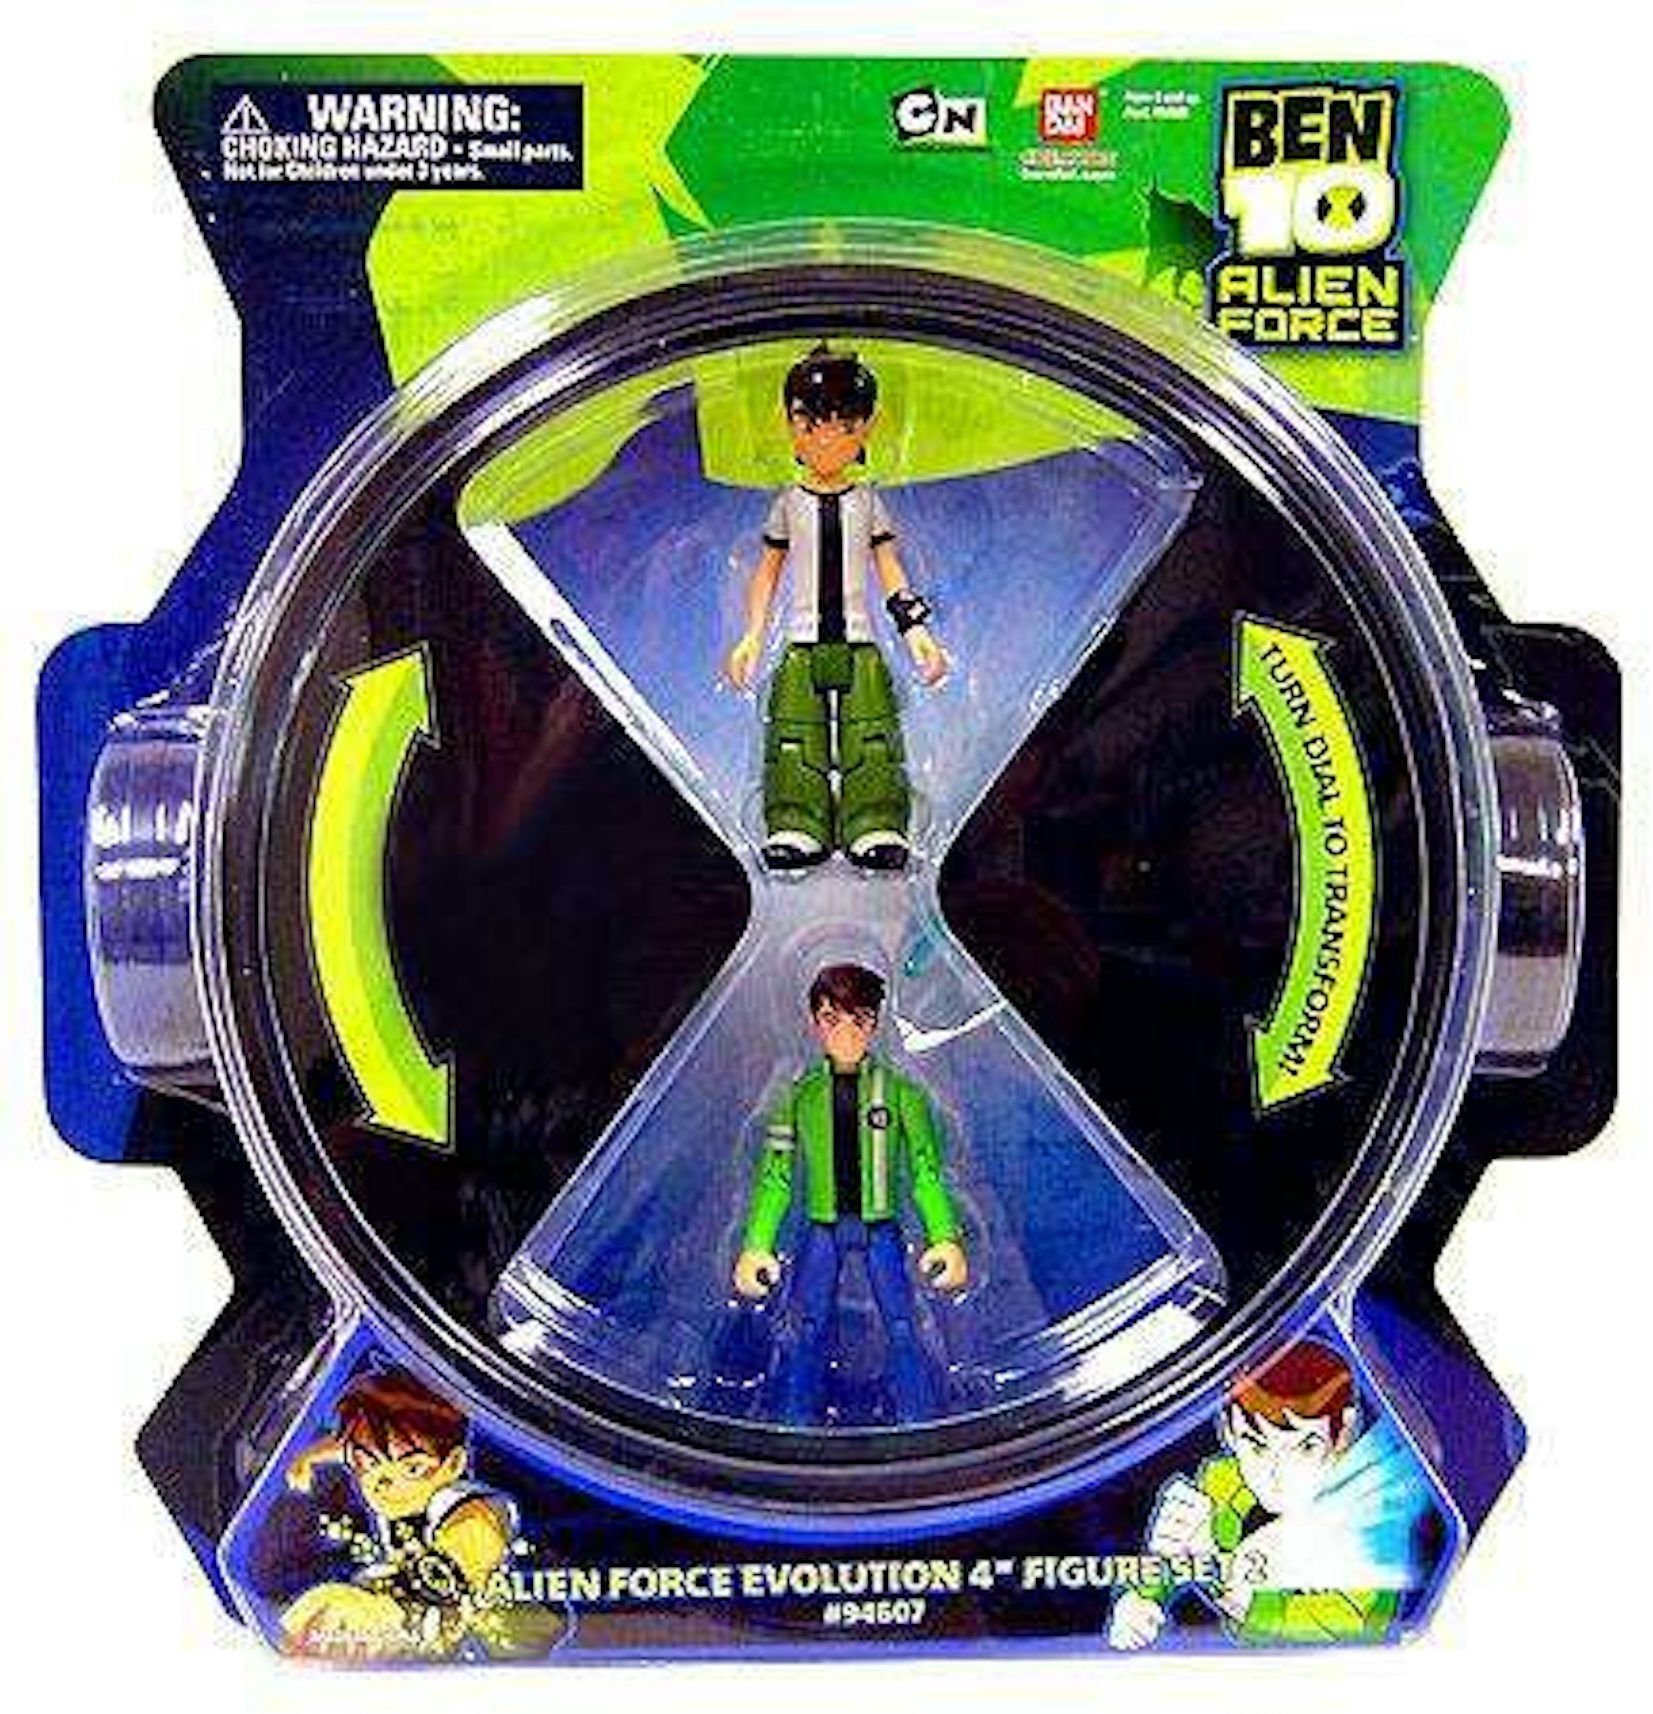 Ben 10 Toy Bundle - Deluxe Omnitrix Creator Set and Action Figures